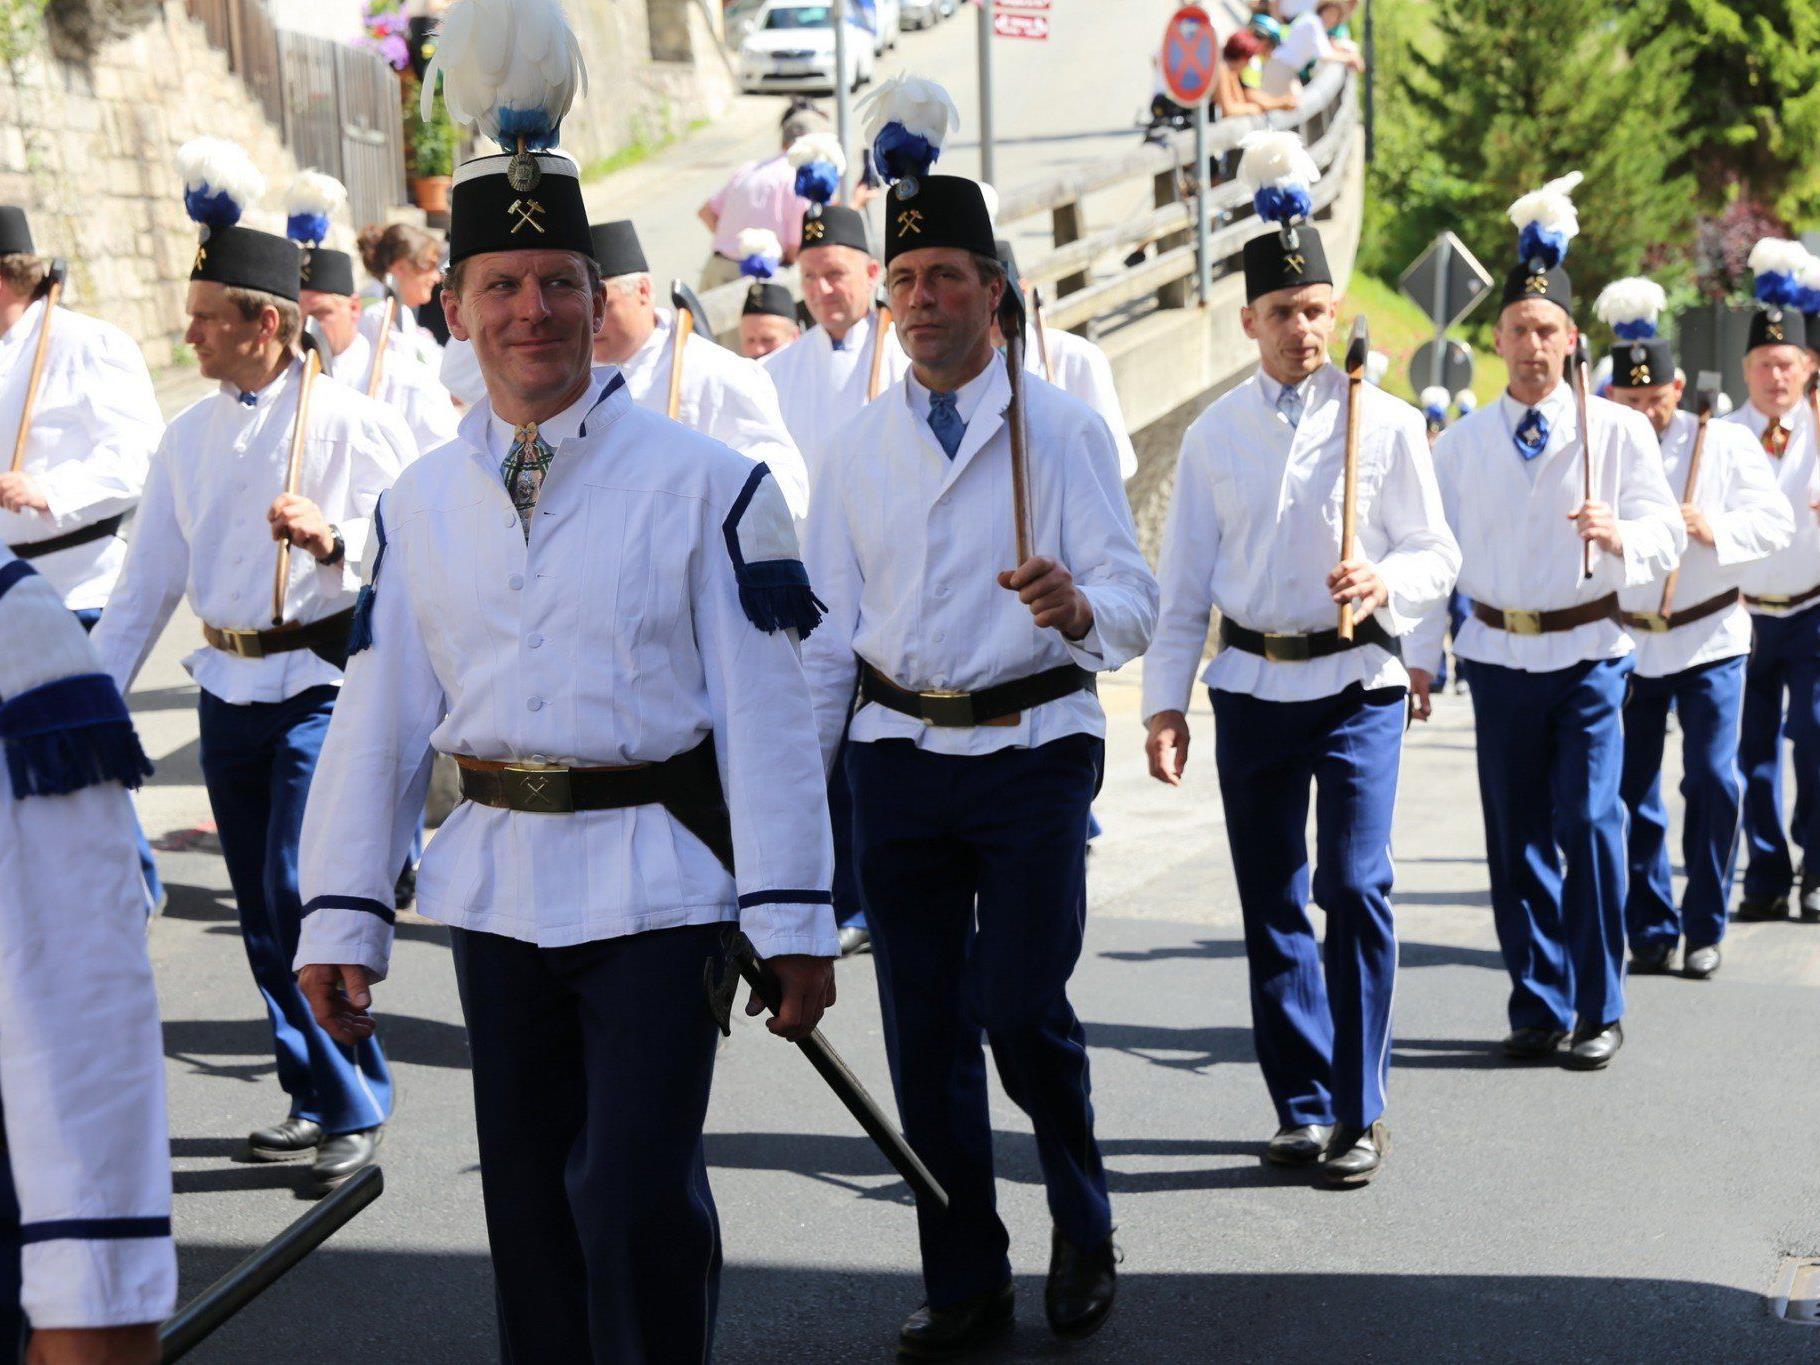 Der tradionelle Festumzug der Bergleute findet einmal jährlich in Berchtesgaden statt.